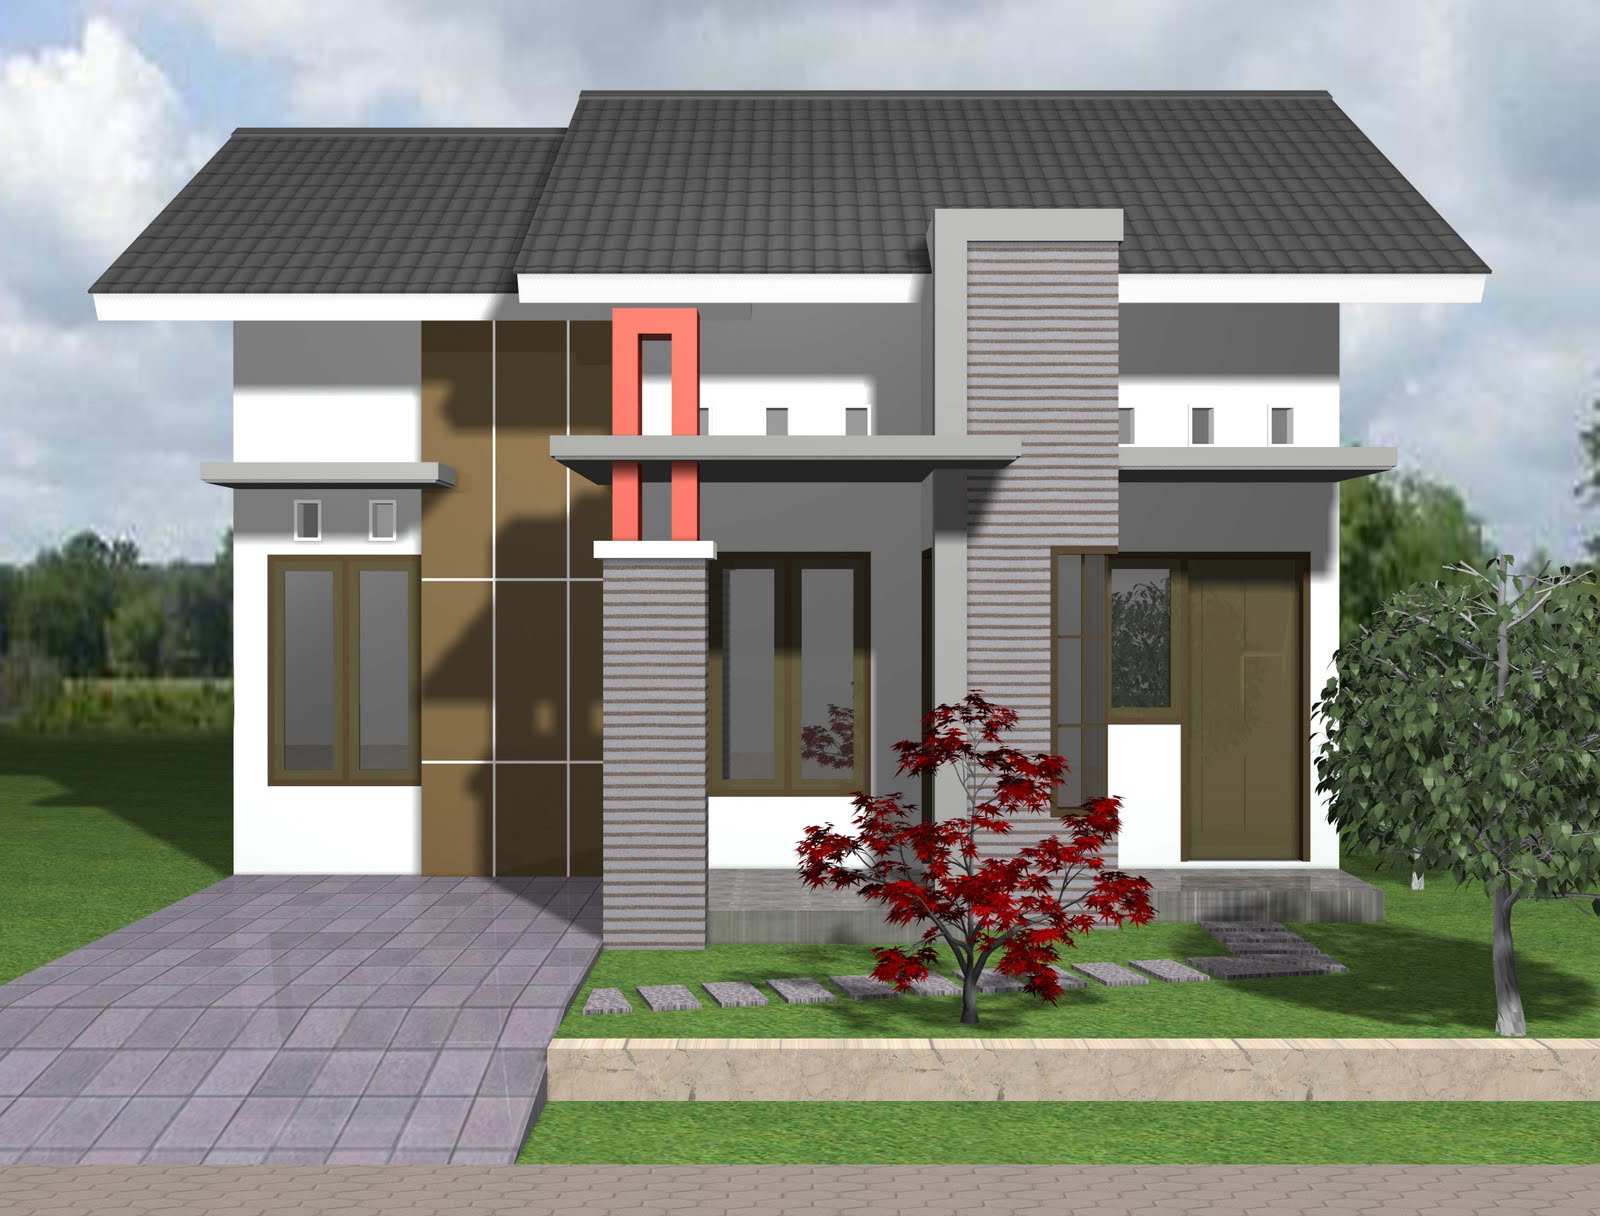 contoh spesifikasi teknis rumah tinggal Apakah perlu menggunakan arsitek untuk mendesain rumah  